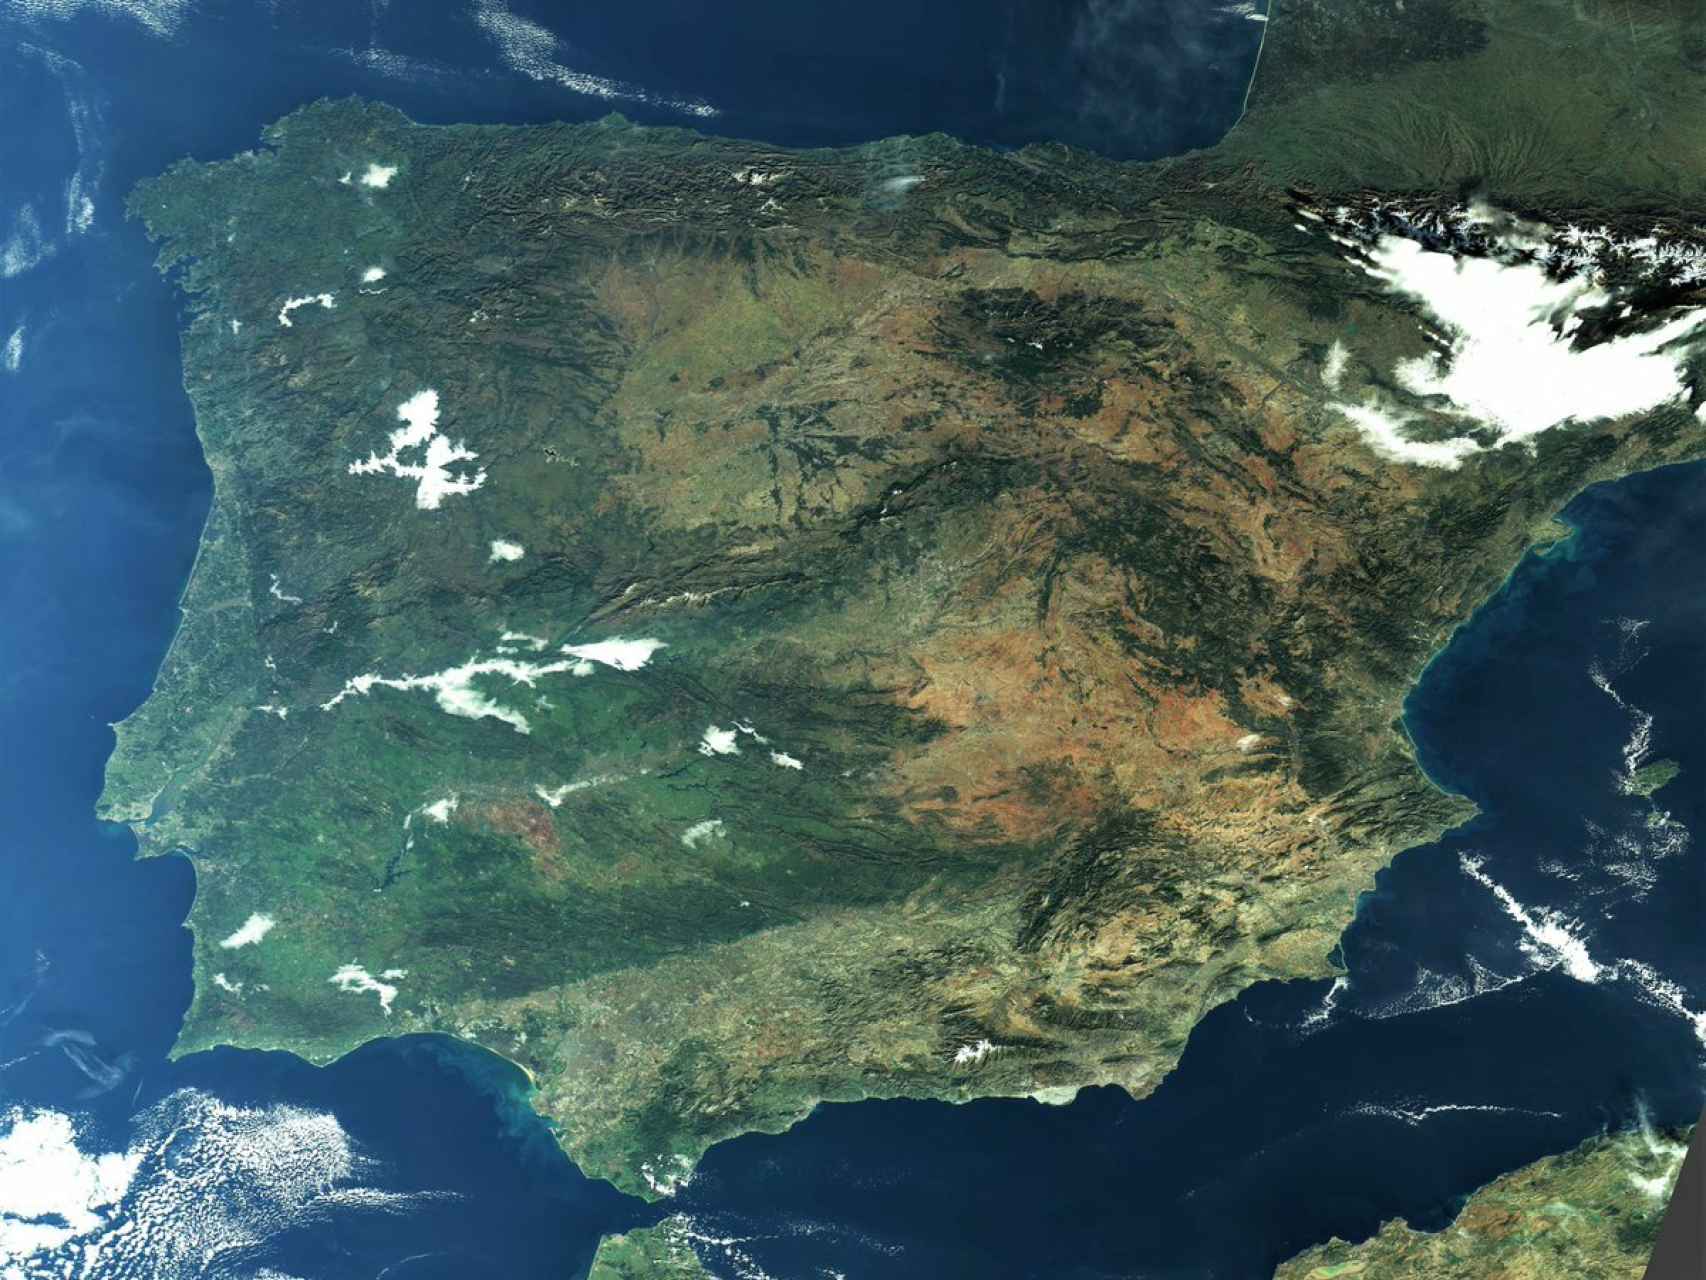 La Península Ibérica vista a través de la constelación de satélites Sentinel-3.